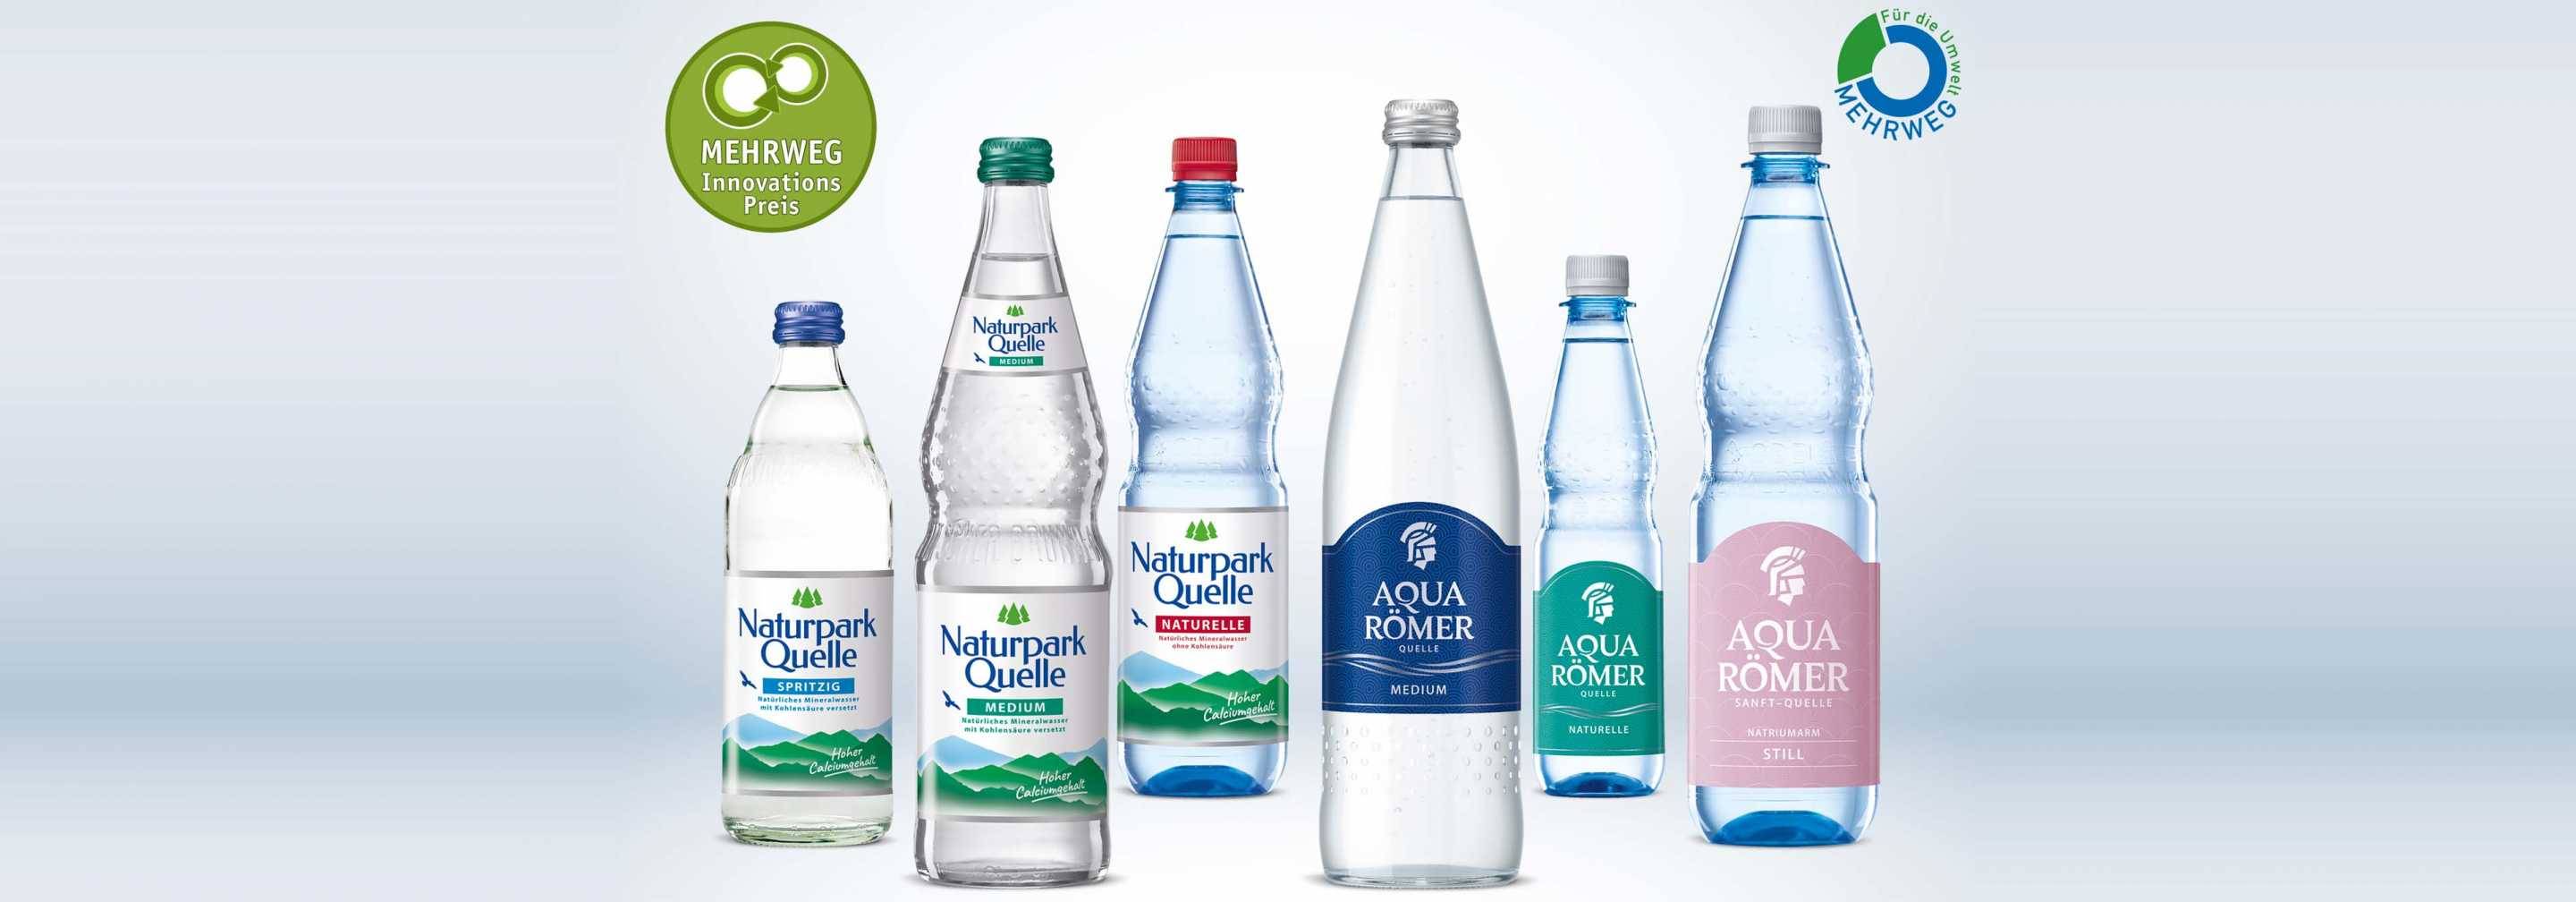 Aqua Römer Quelle & Naturparkquelle Produktabbildungen